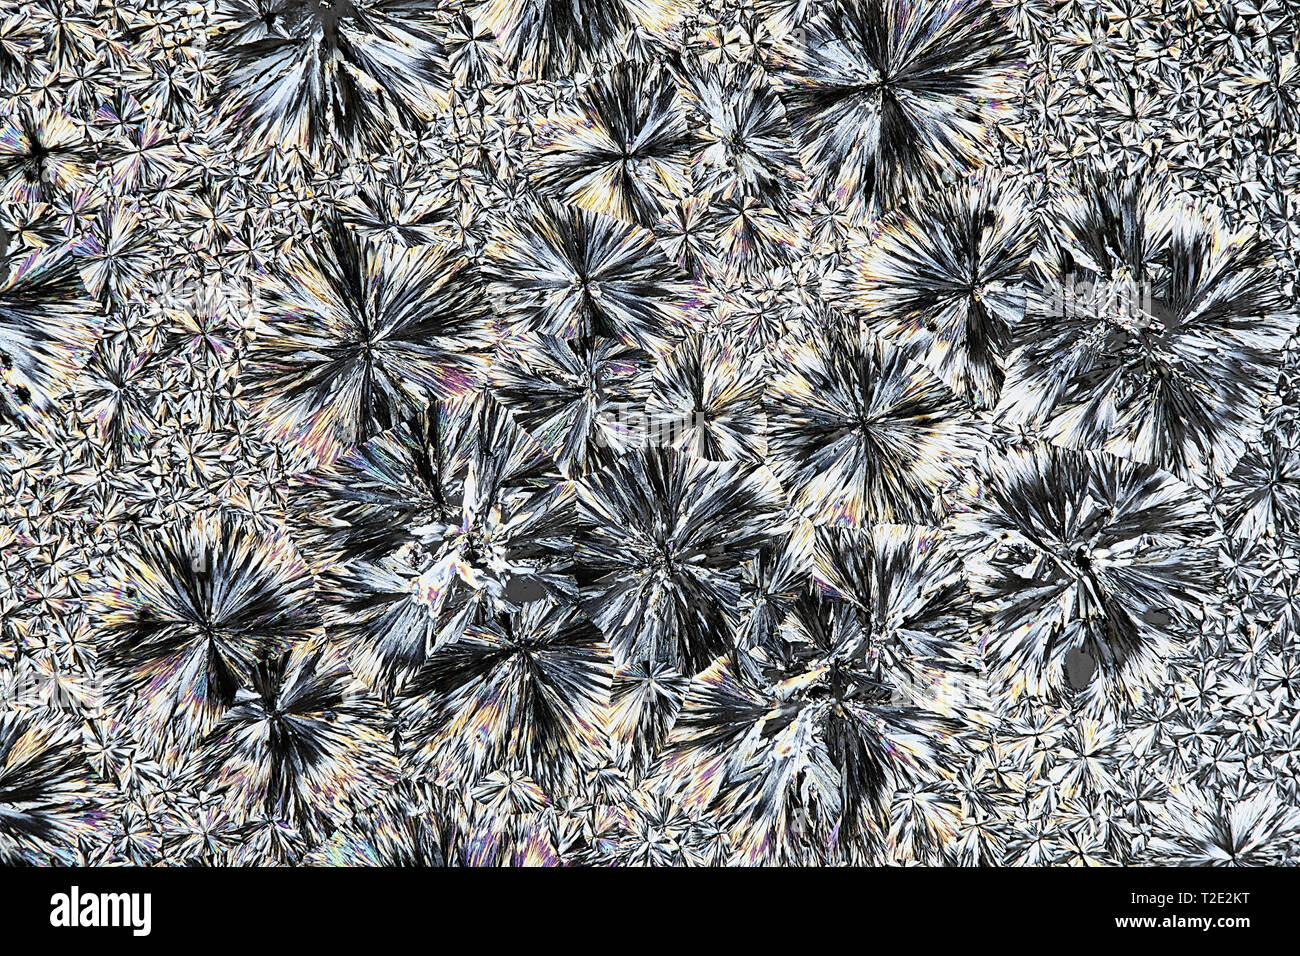 Kristalle von Acetylsalicylsäure, eine gemeinsame Schmerzmittel, Mikroskop Bild Stockfoto